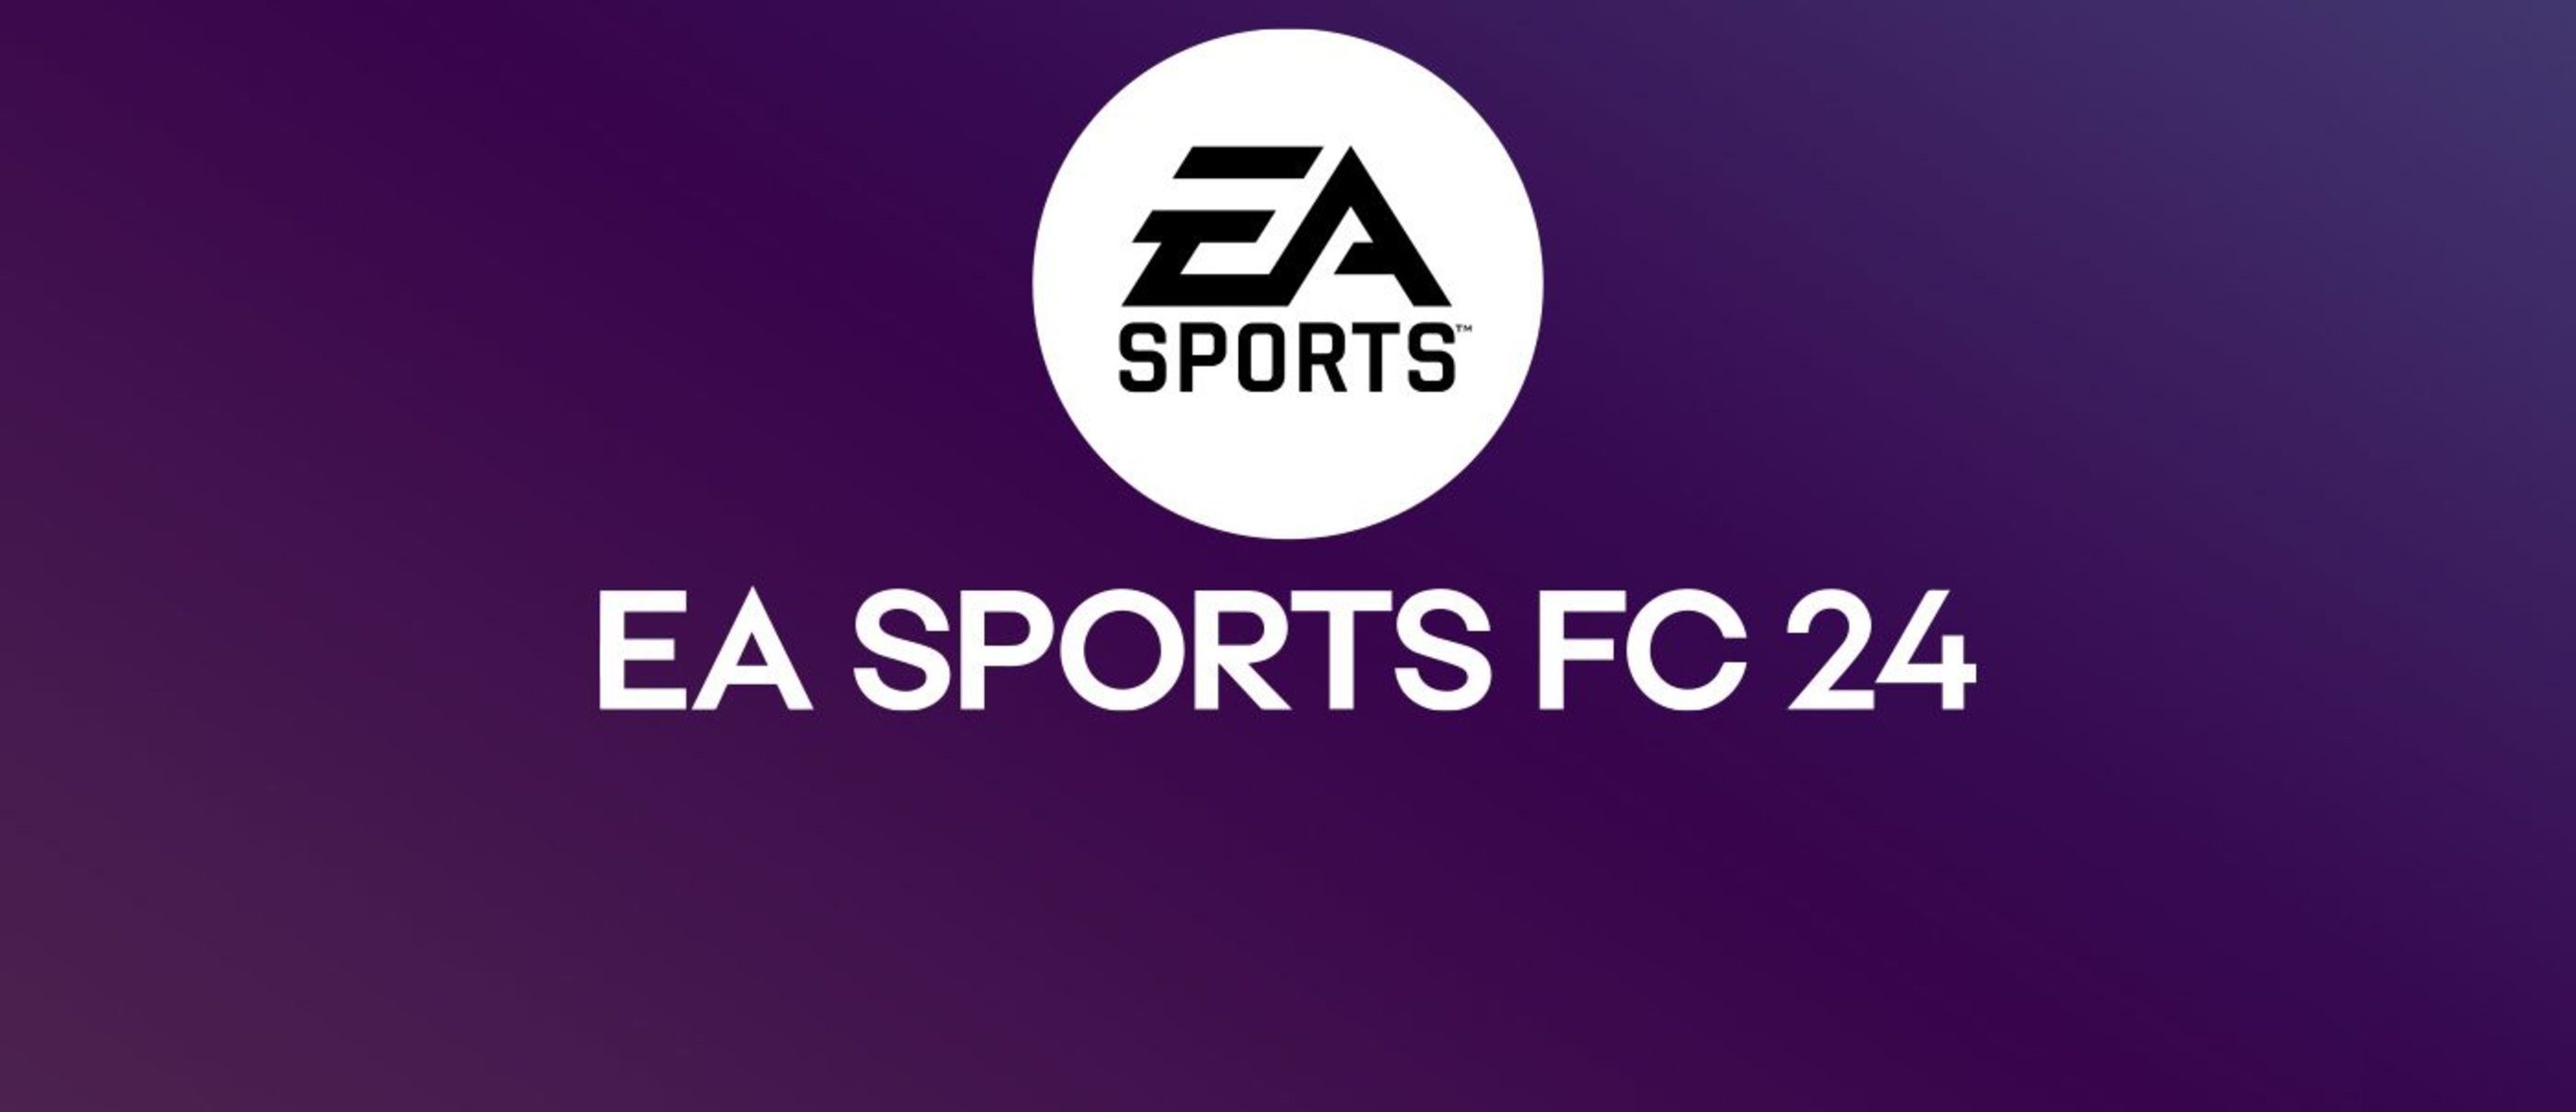 Ea fc ps4. EA fc24 (FIFA). EA FC 24. EA Sports FC 24. FC 24 ps4.